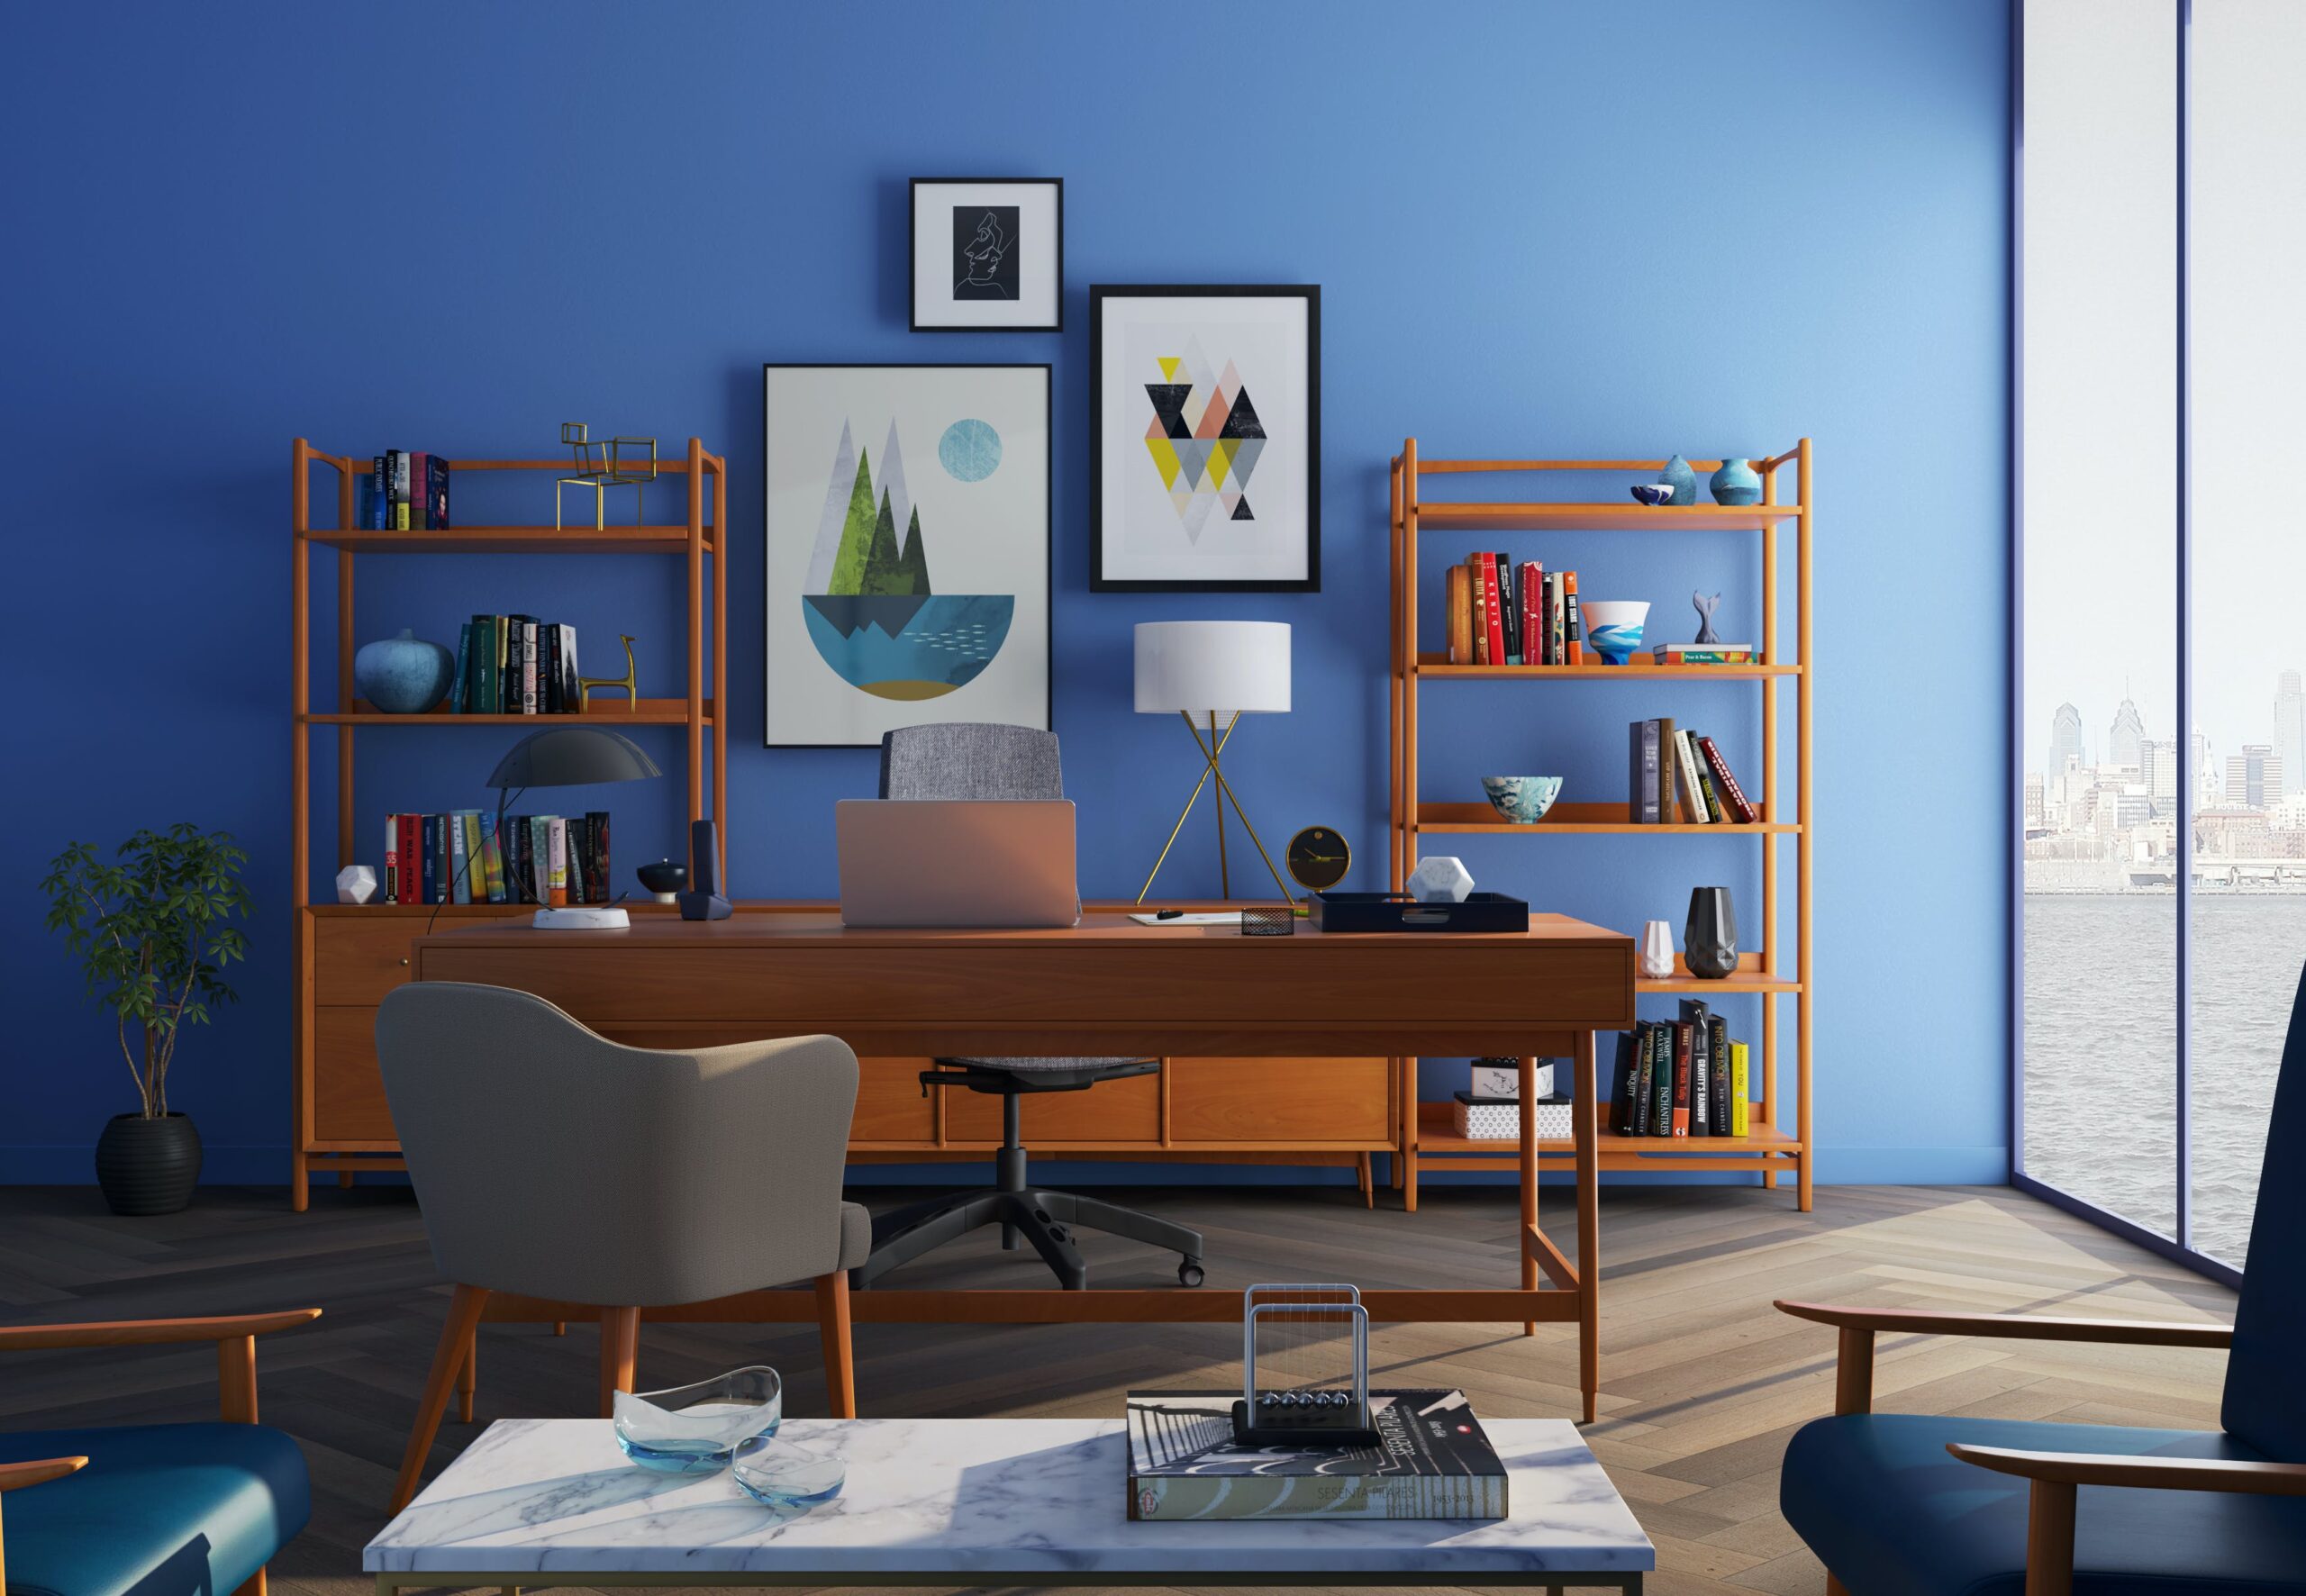 Využijte regály pro efektivní a estetické uspořádání vašeho interiéru